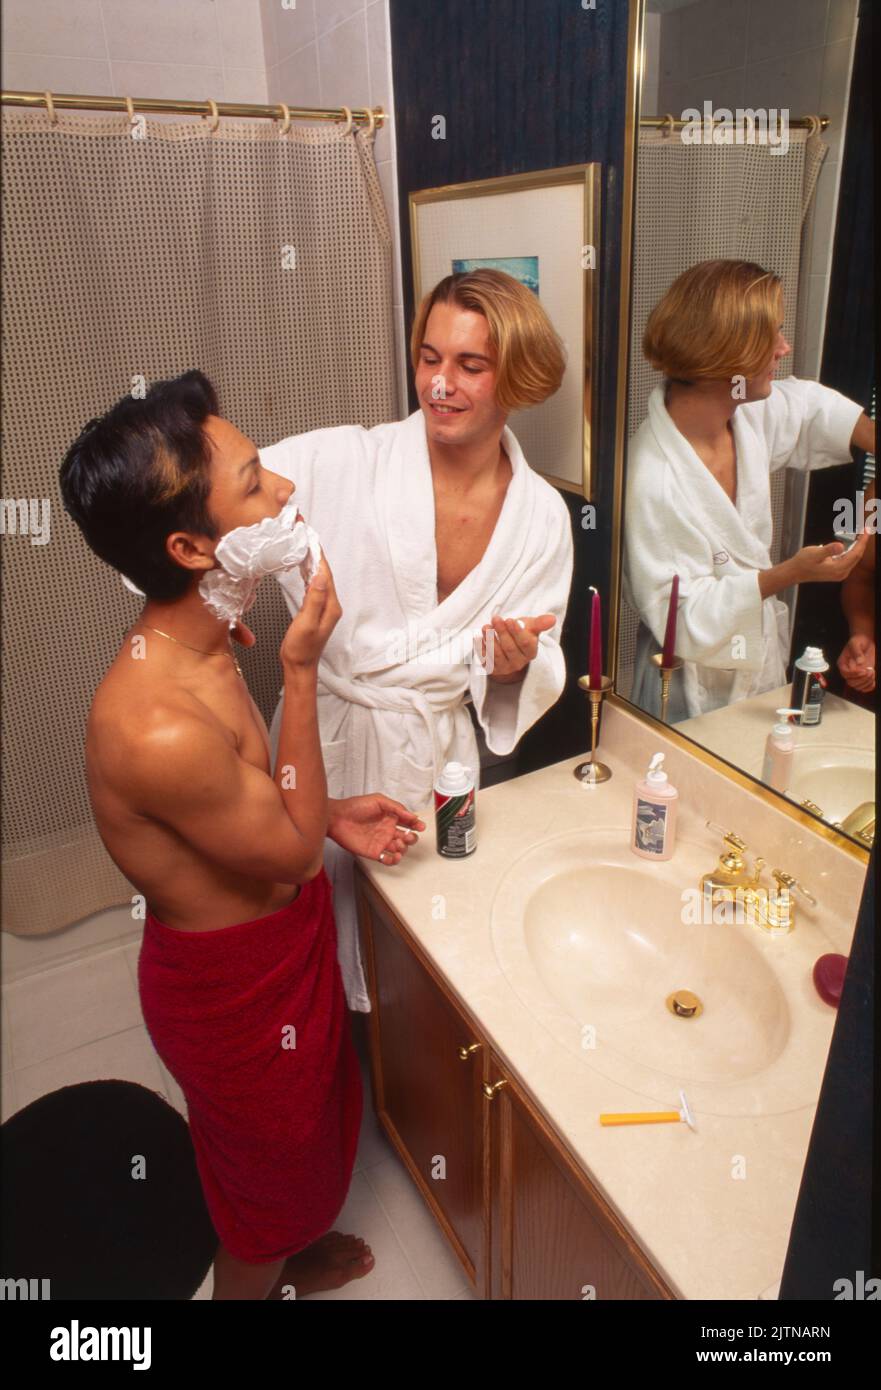 Zwei junge schwule Männer im Badezimmer rasieren. Stockfoto